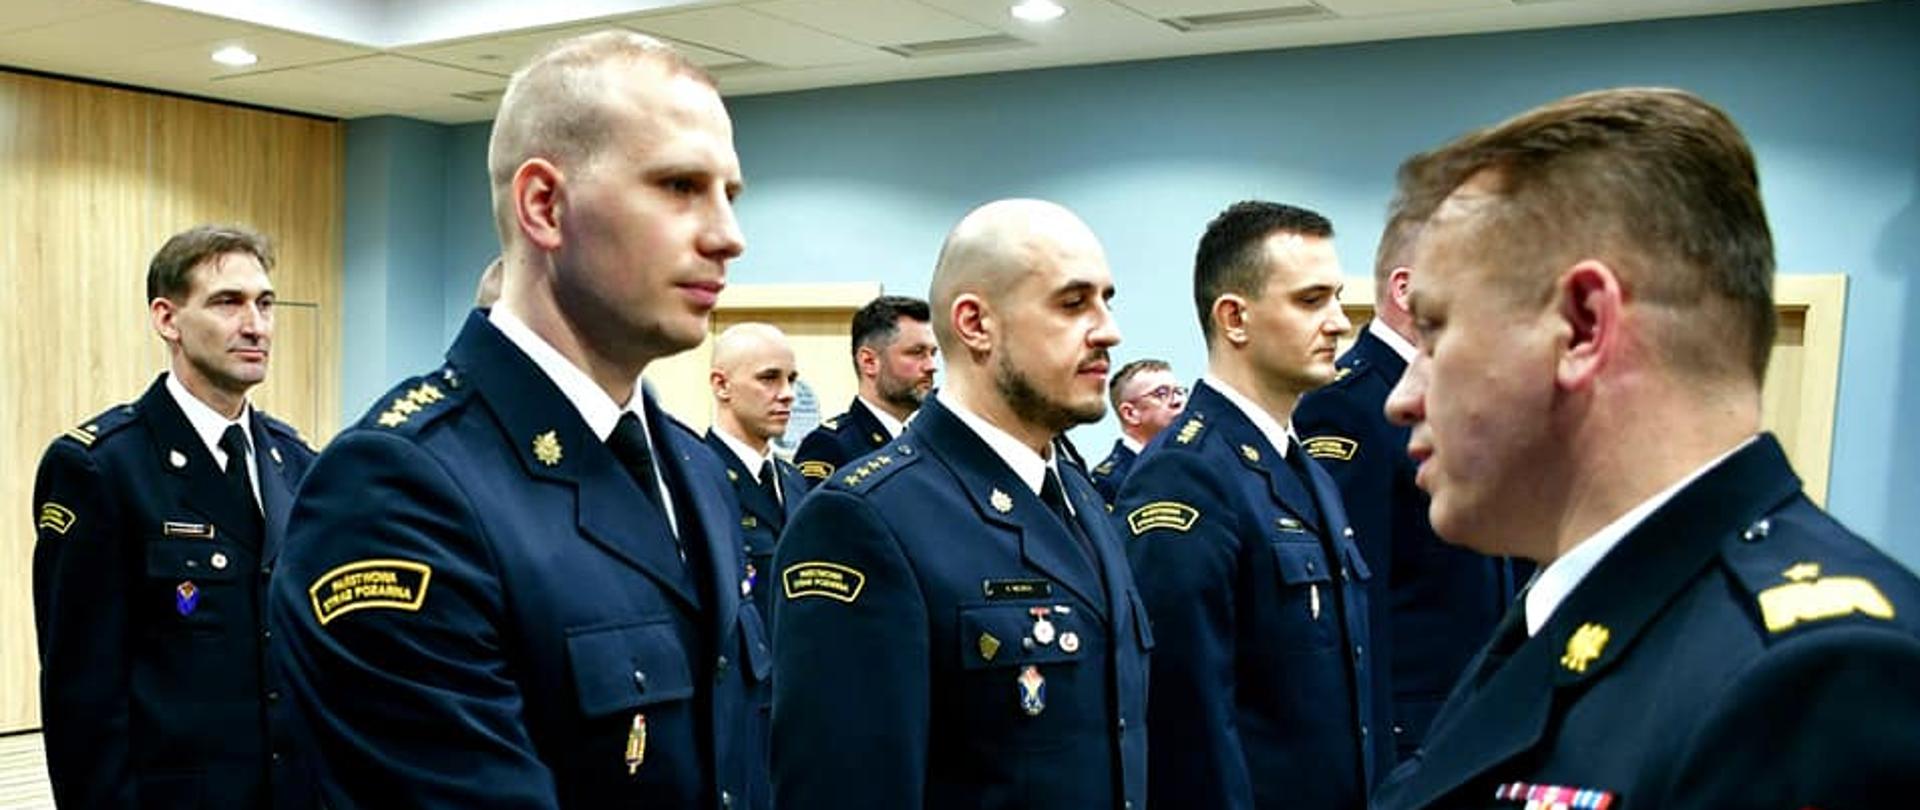 Mazowiecki Komendant Wojewódzki wręcza teczkę oficerowi Straży Pożarnej stojącym w jednym z dwóch szeregów.